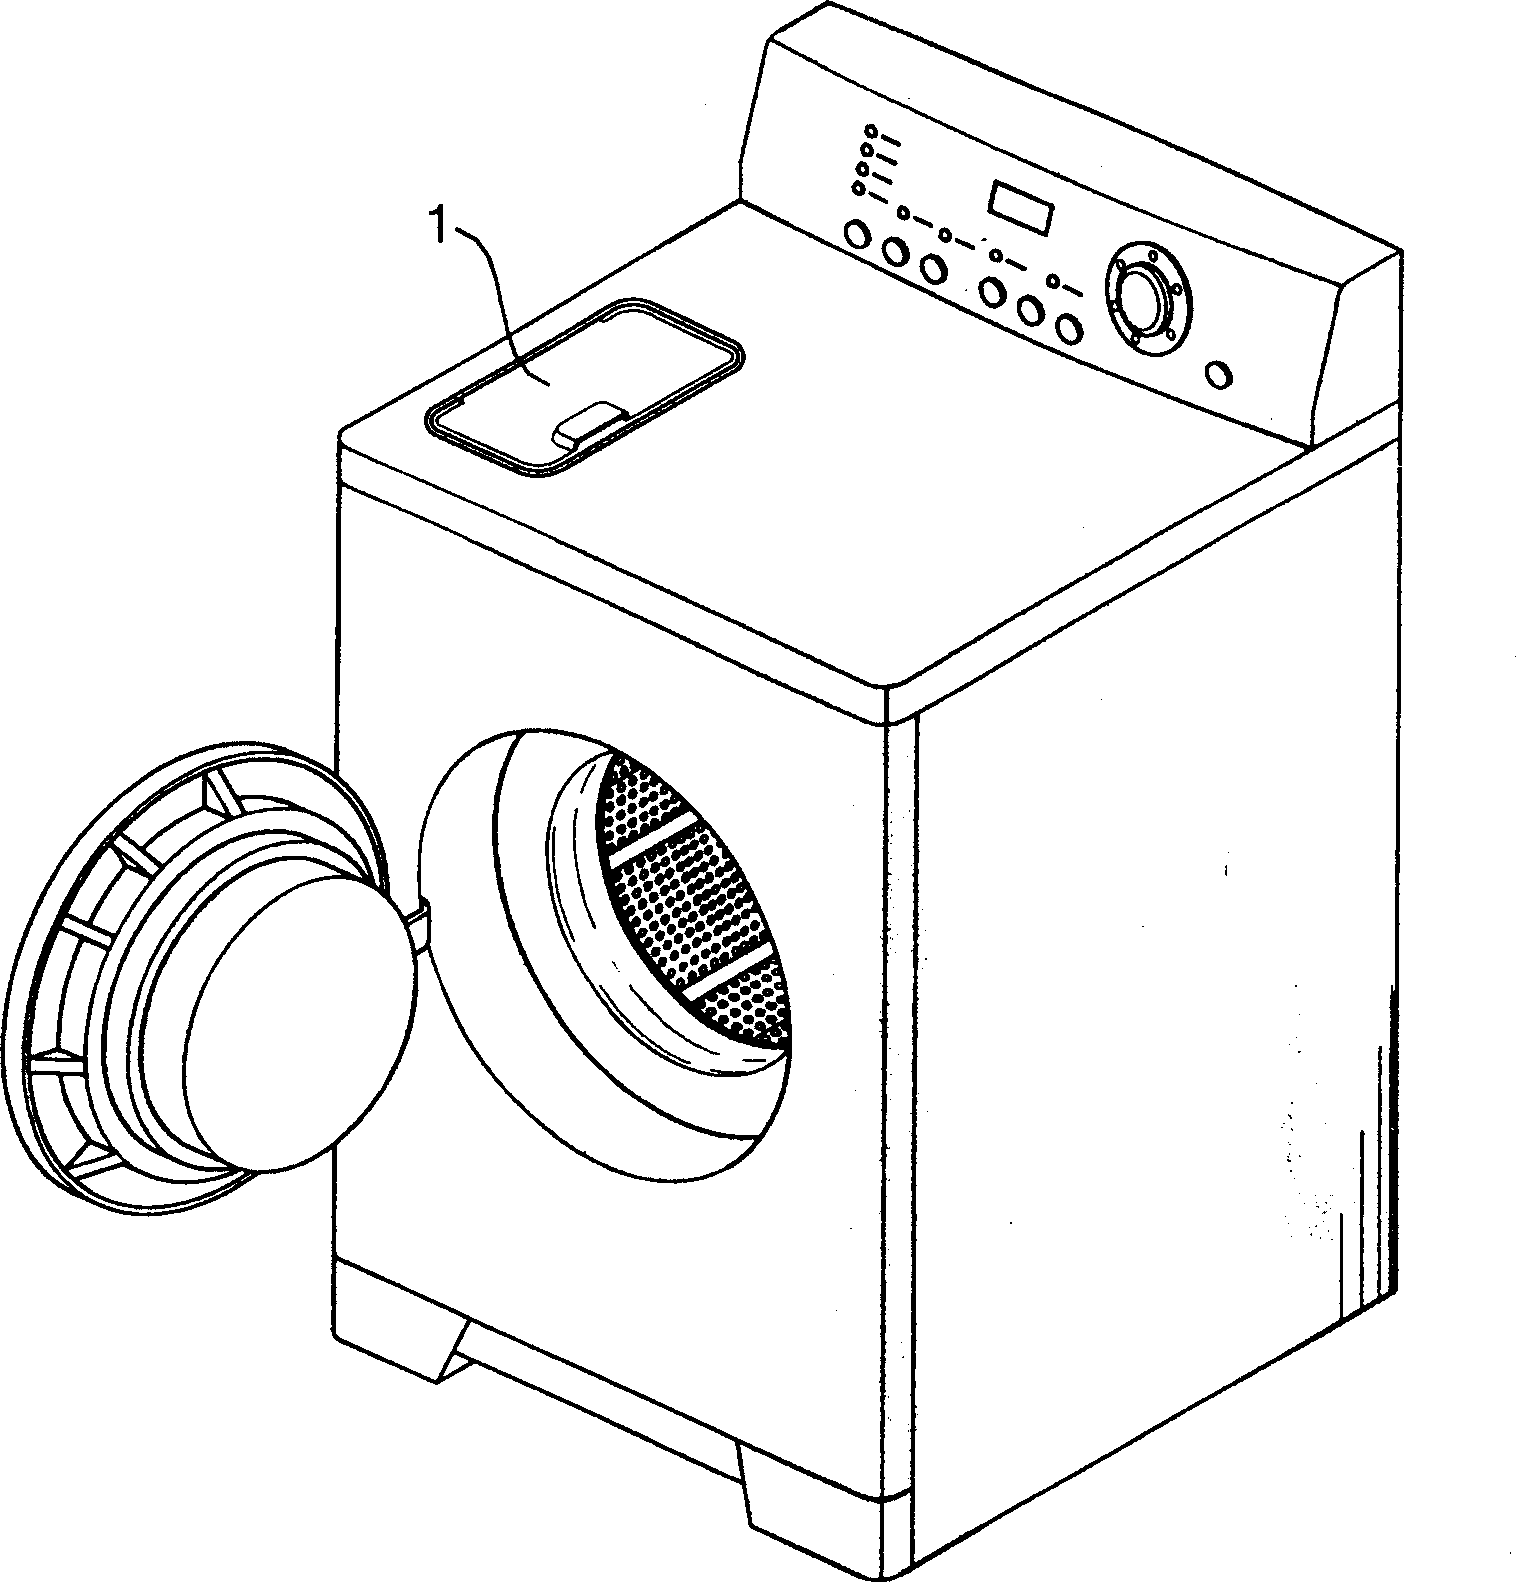 Detergent put-in device for washing machine